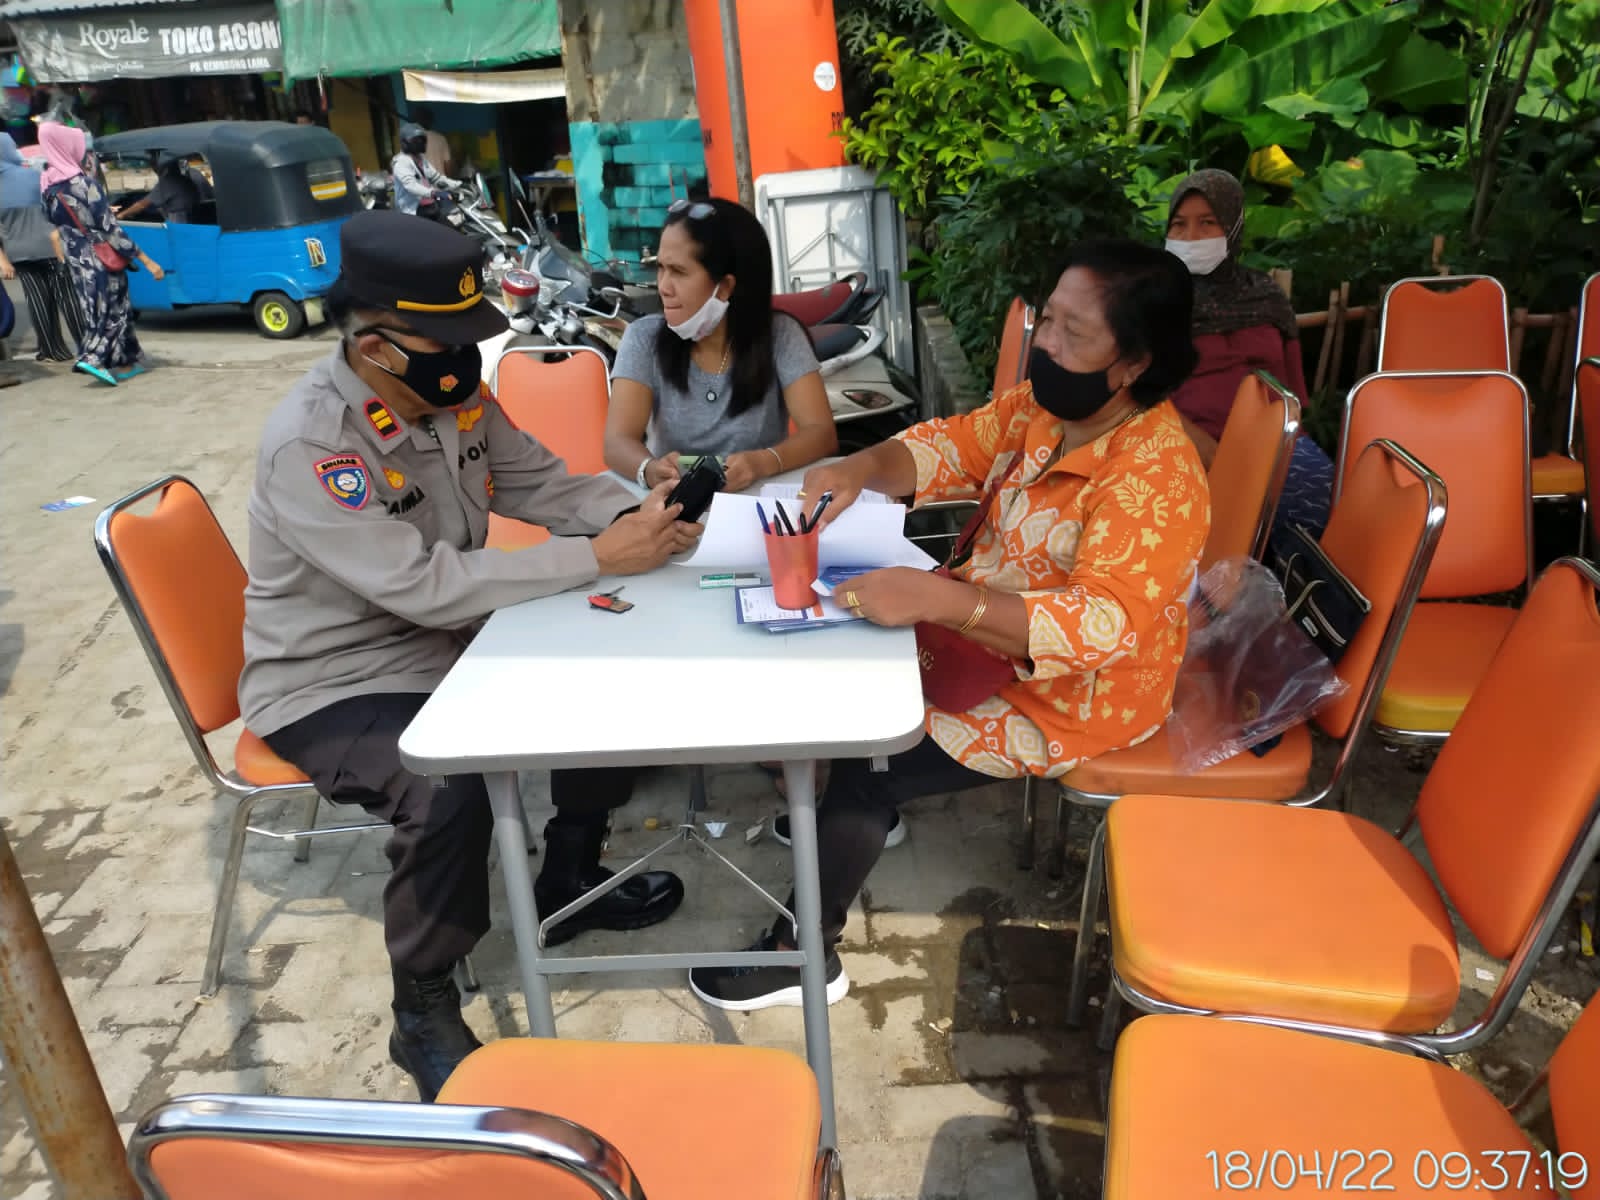 Polsek Johar Baru Polres Jakarta Pusat melaksanakan vaksinasi booster. (Foto: PMJ News)